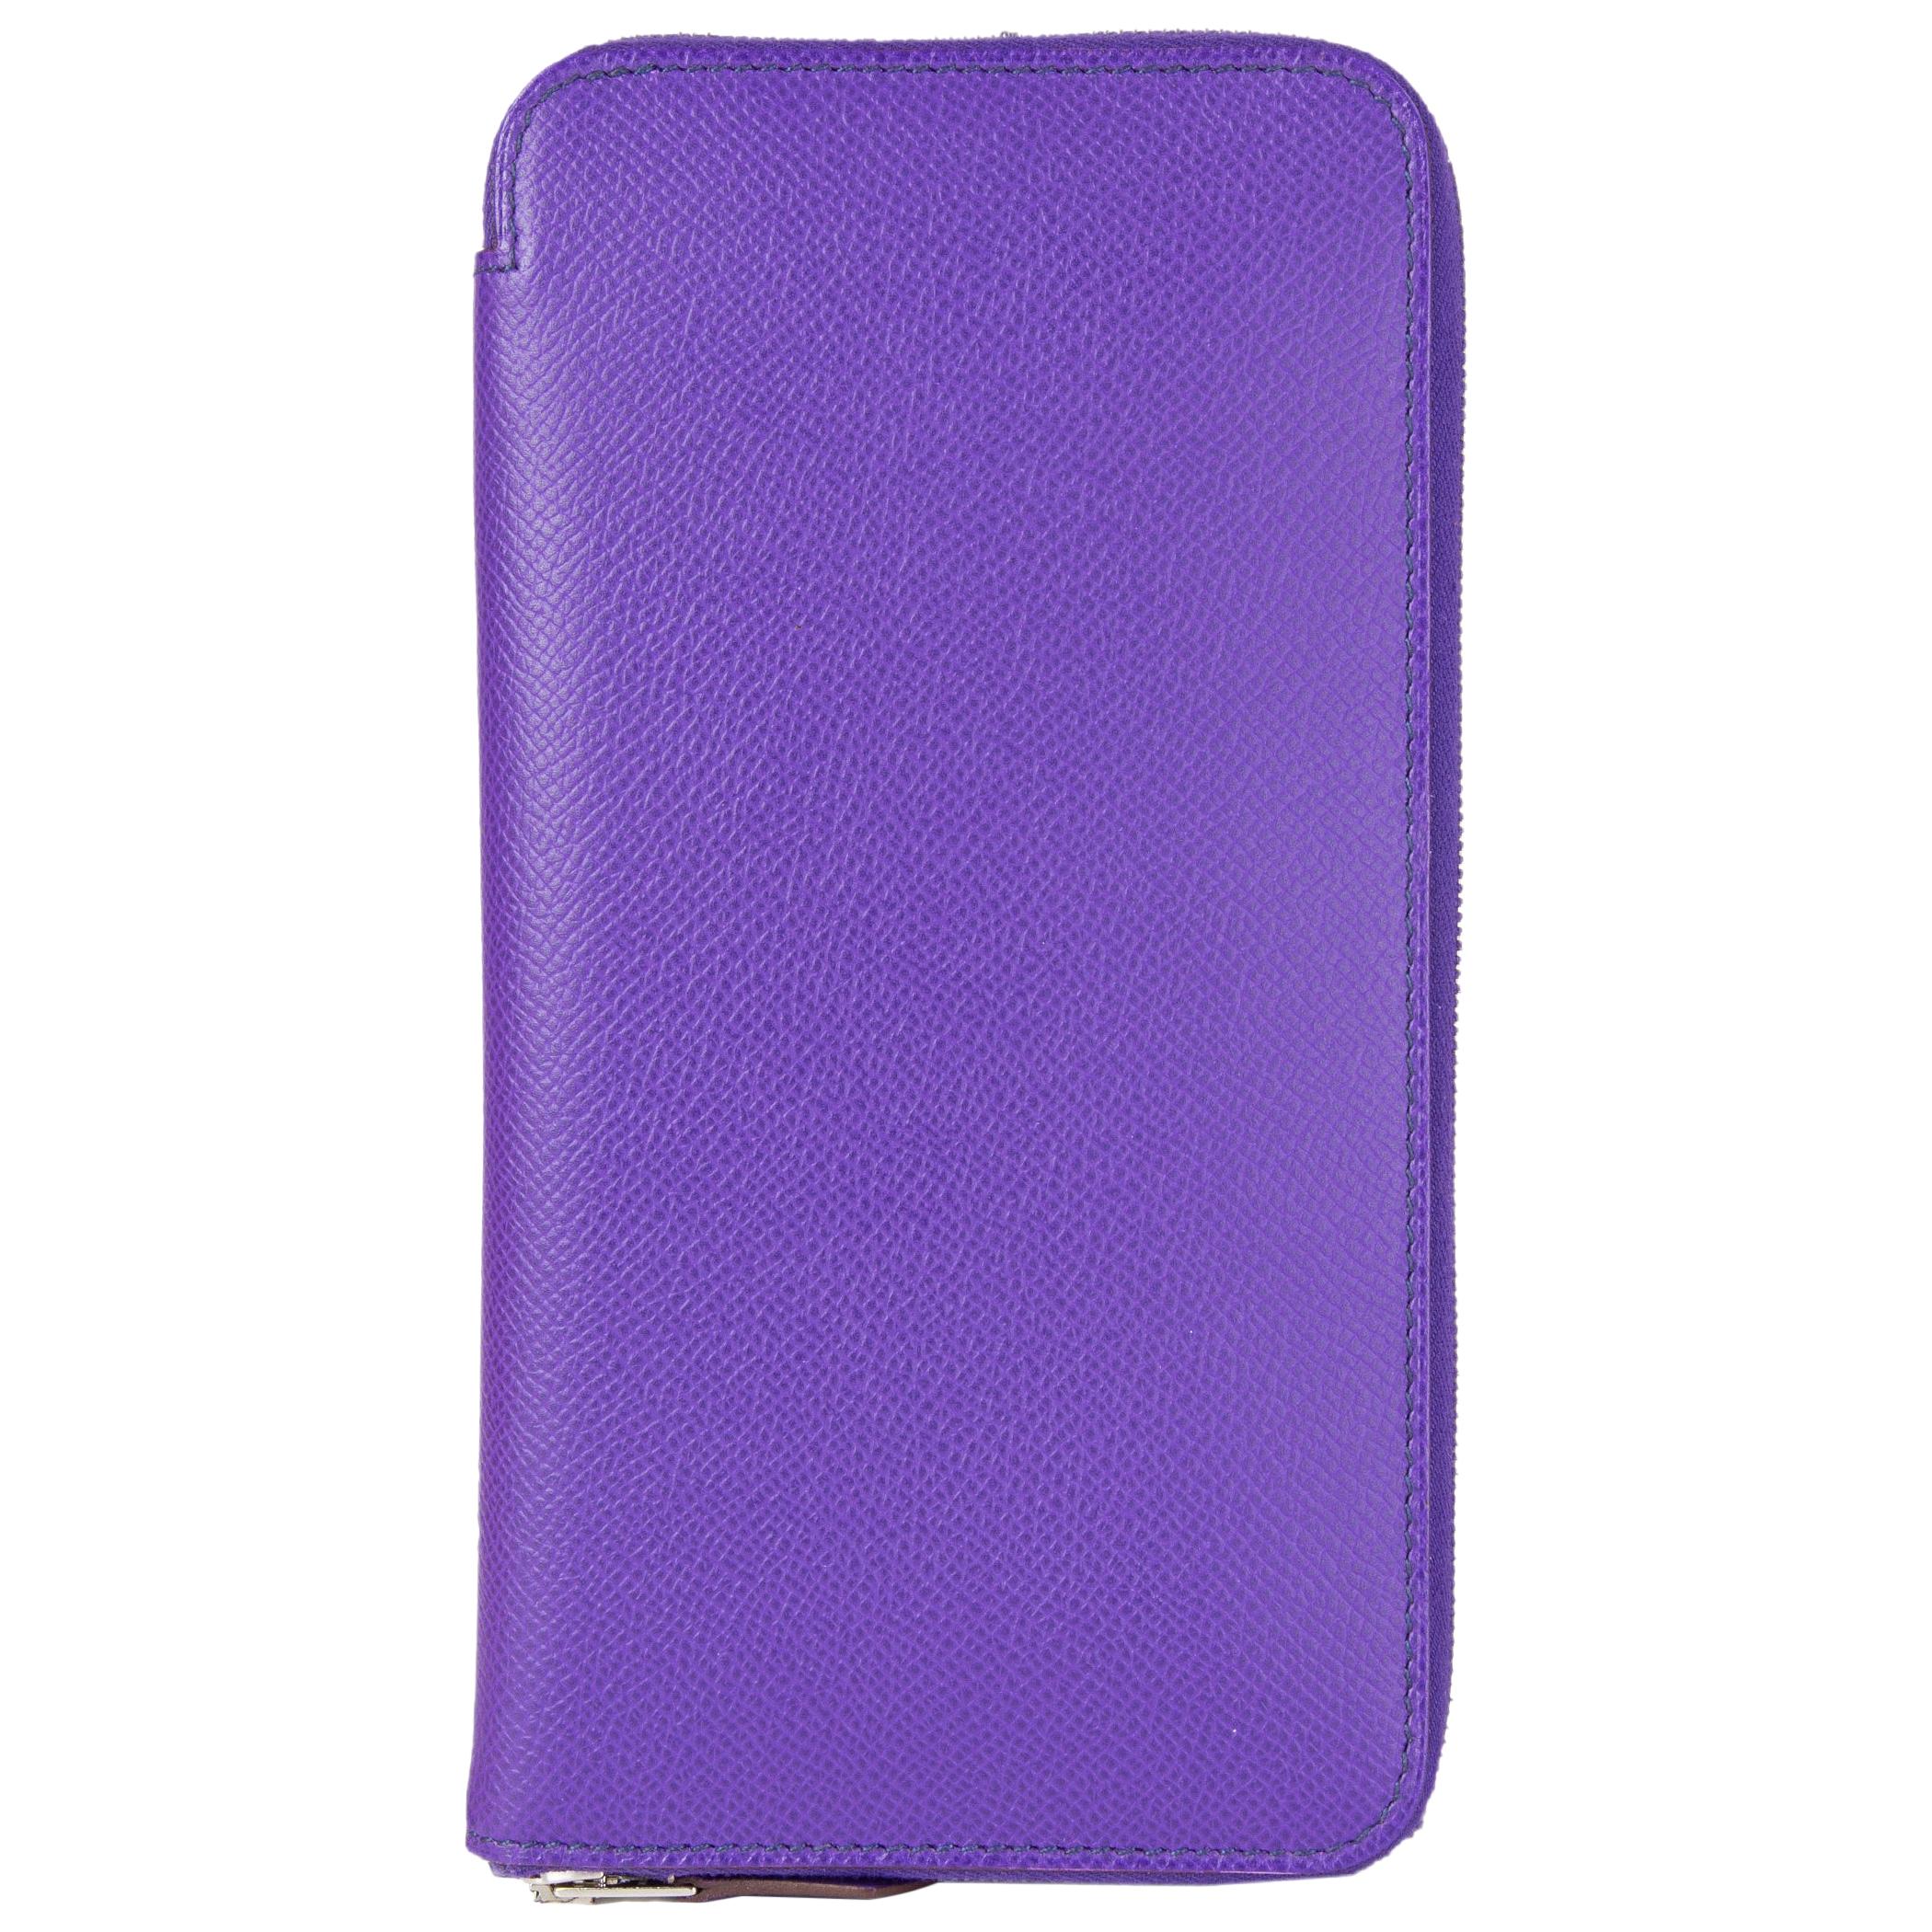 HERMES Violet purple Epsom leather AZAP CLASSIC Wallet